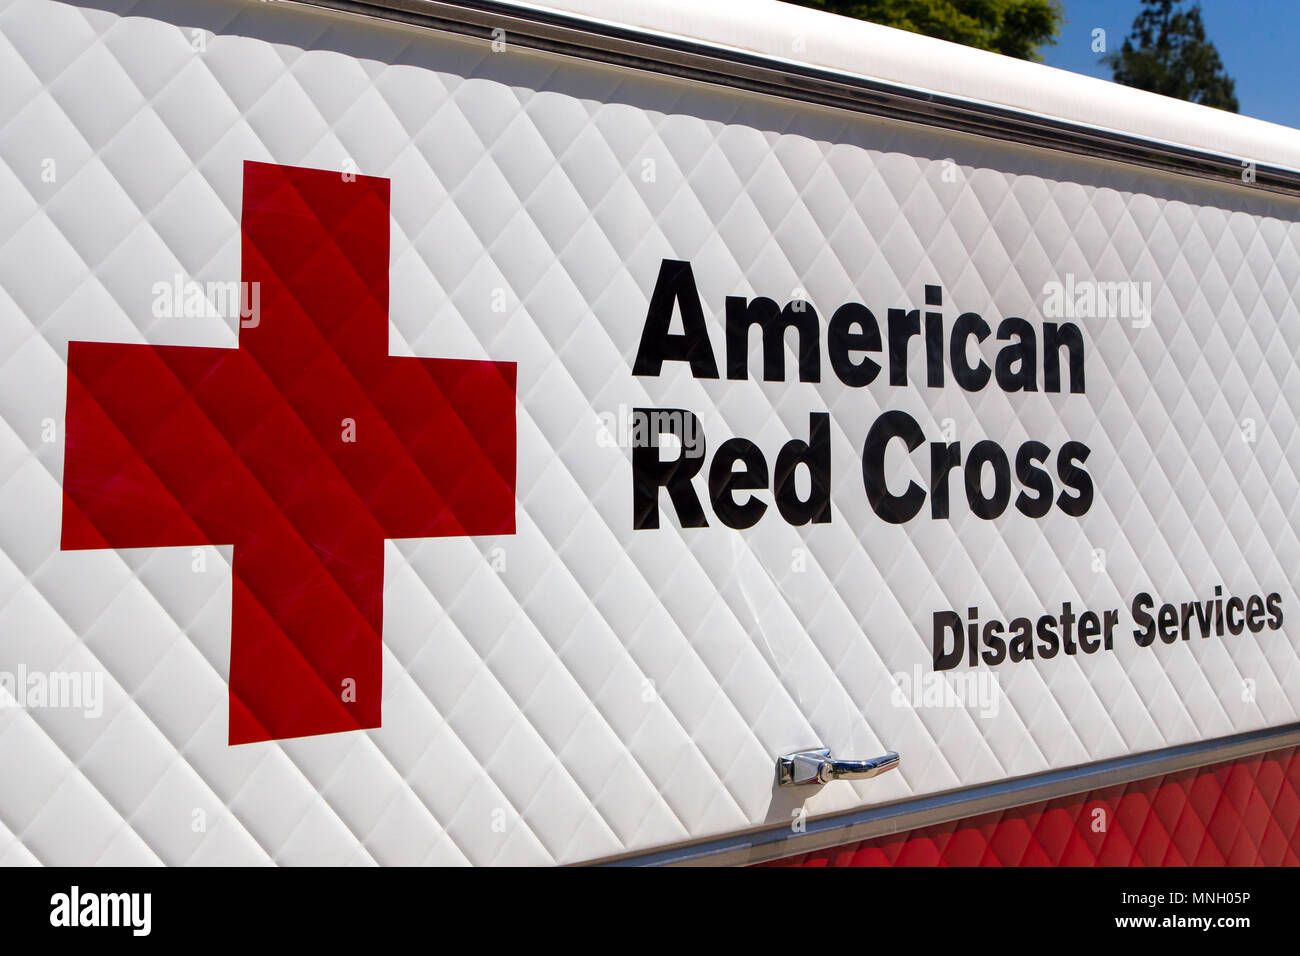 ARCADIA, CA/USA - Abril 16, 2016: Los servicios de socorro de la Cruz Roja Americana y el logotipo del vehículo. Foto de stock